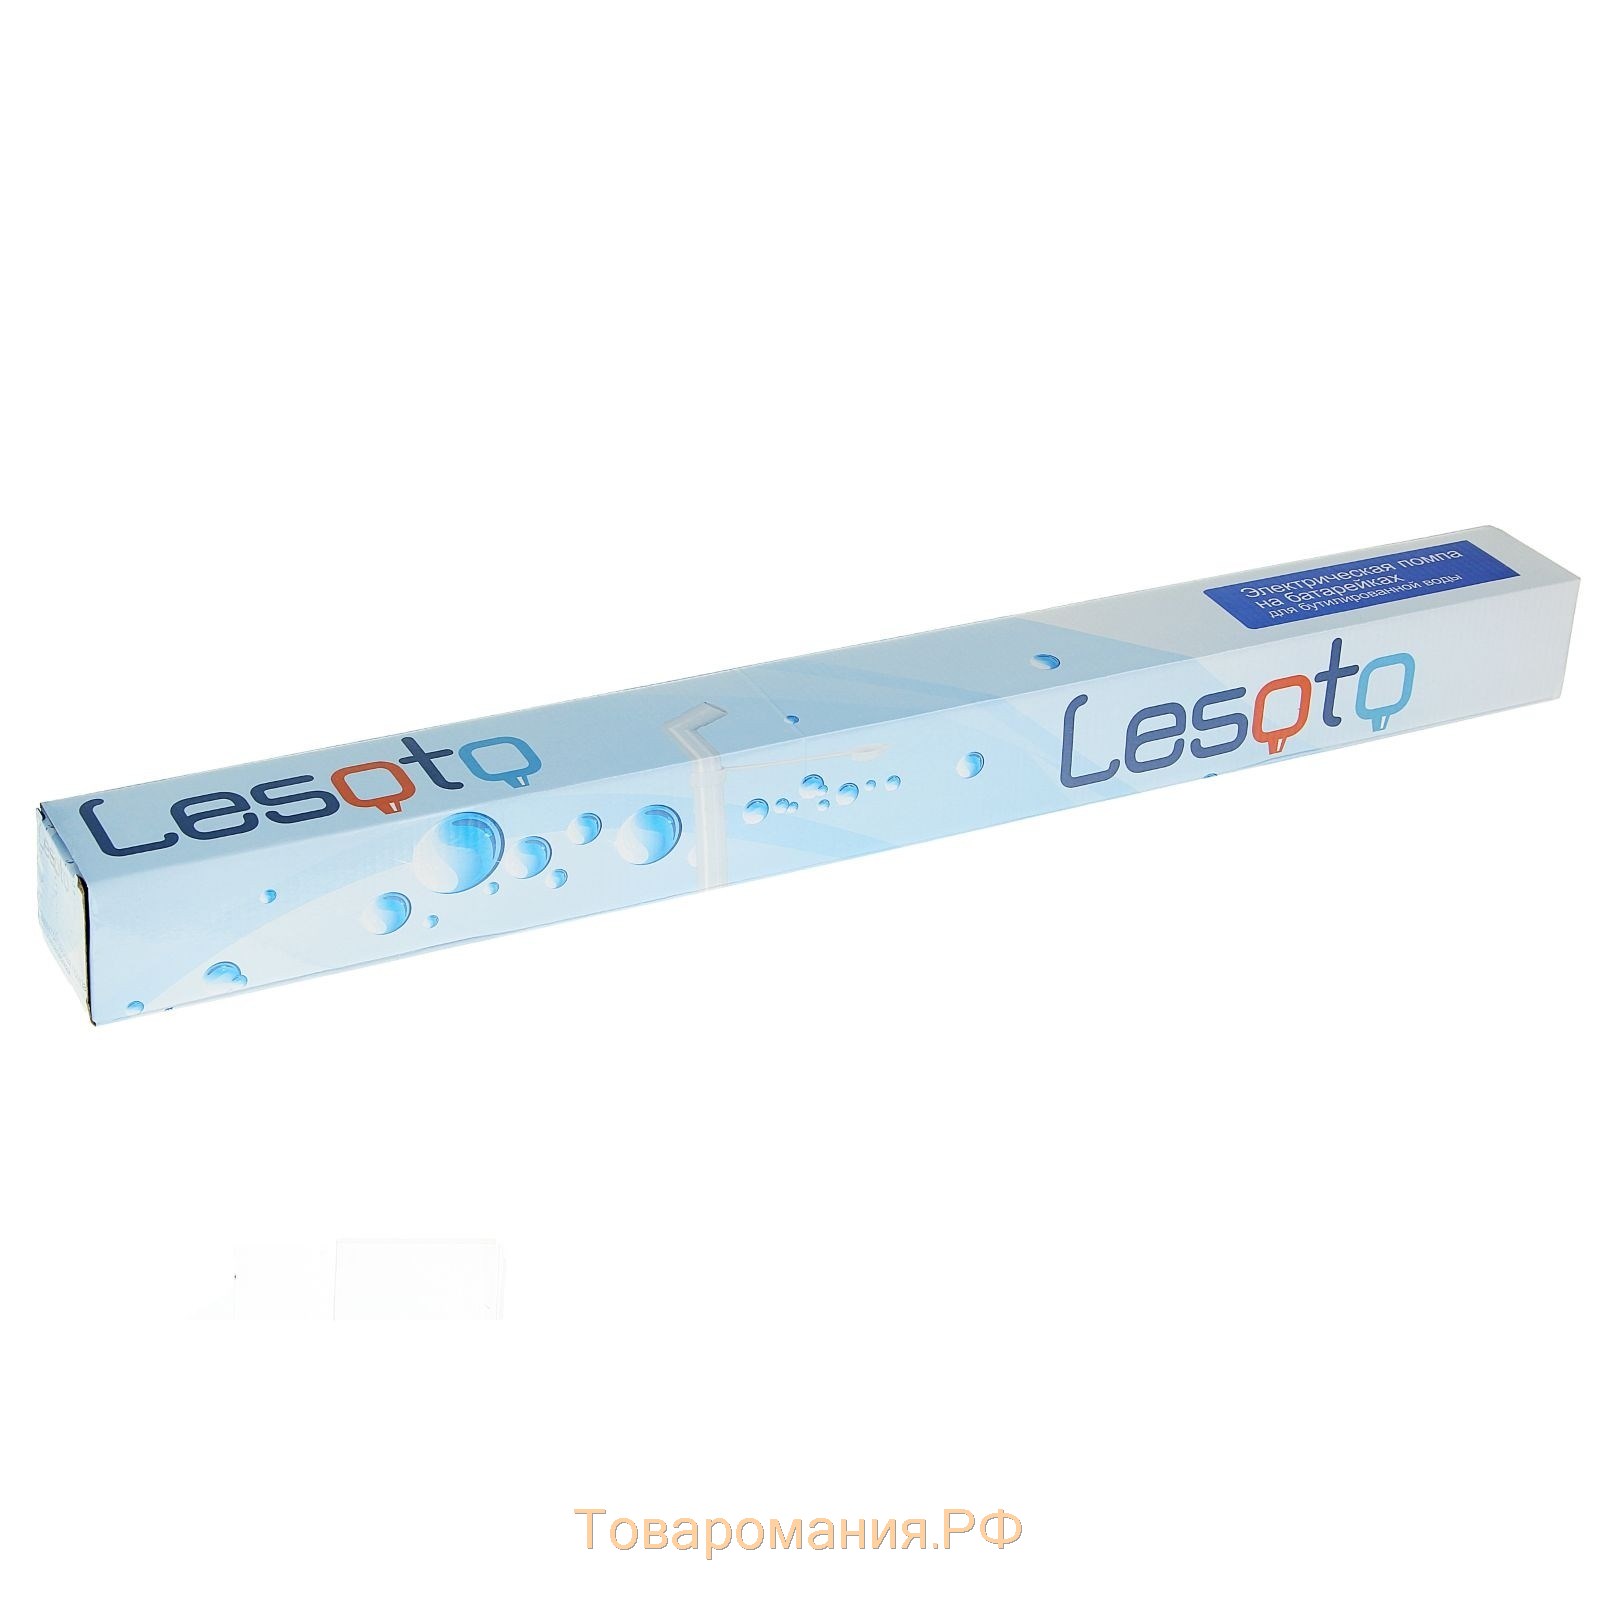 Помпа для воды LESOTO Electro, электрическая, 5 л/мин, от батареек